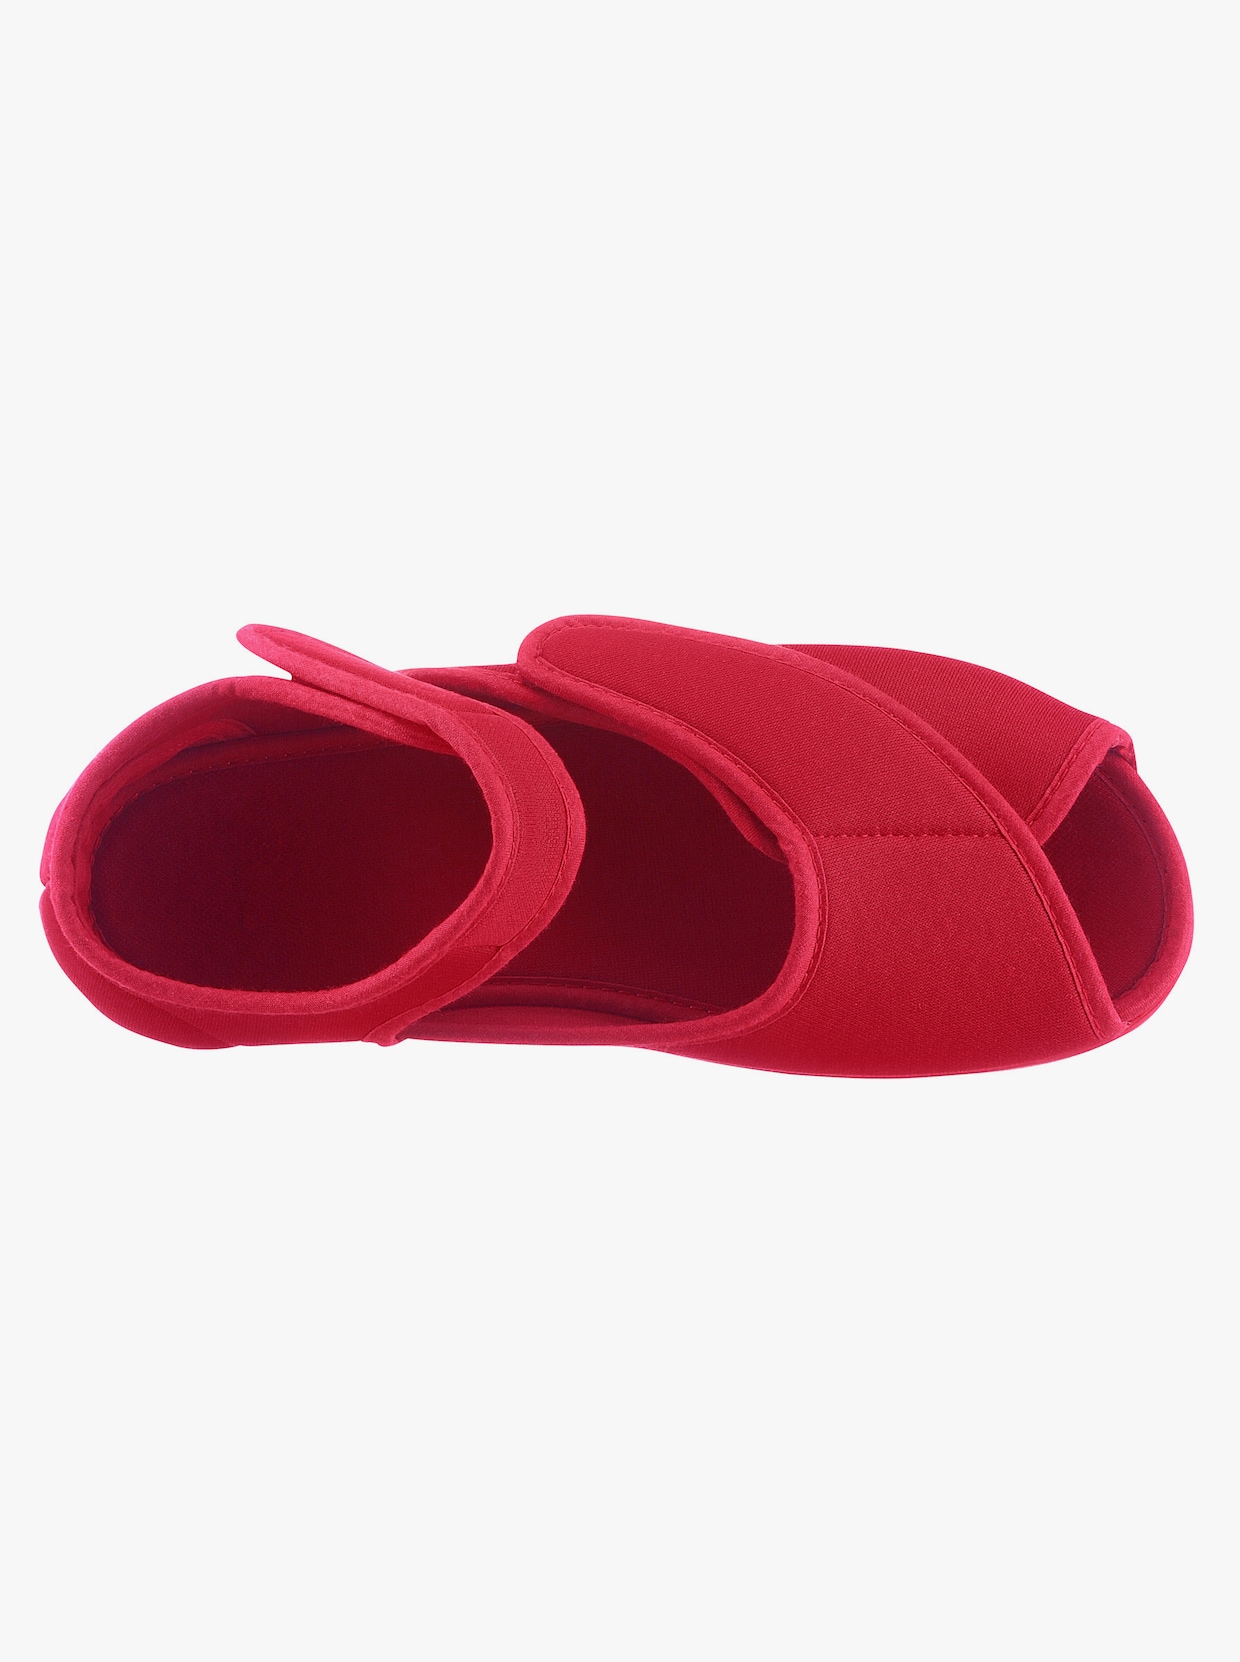 Topánky so zapínaním na suchý zips - červená